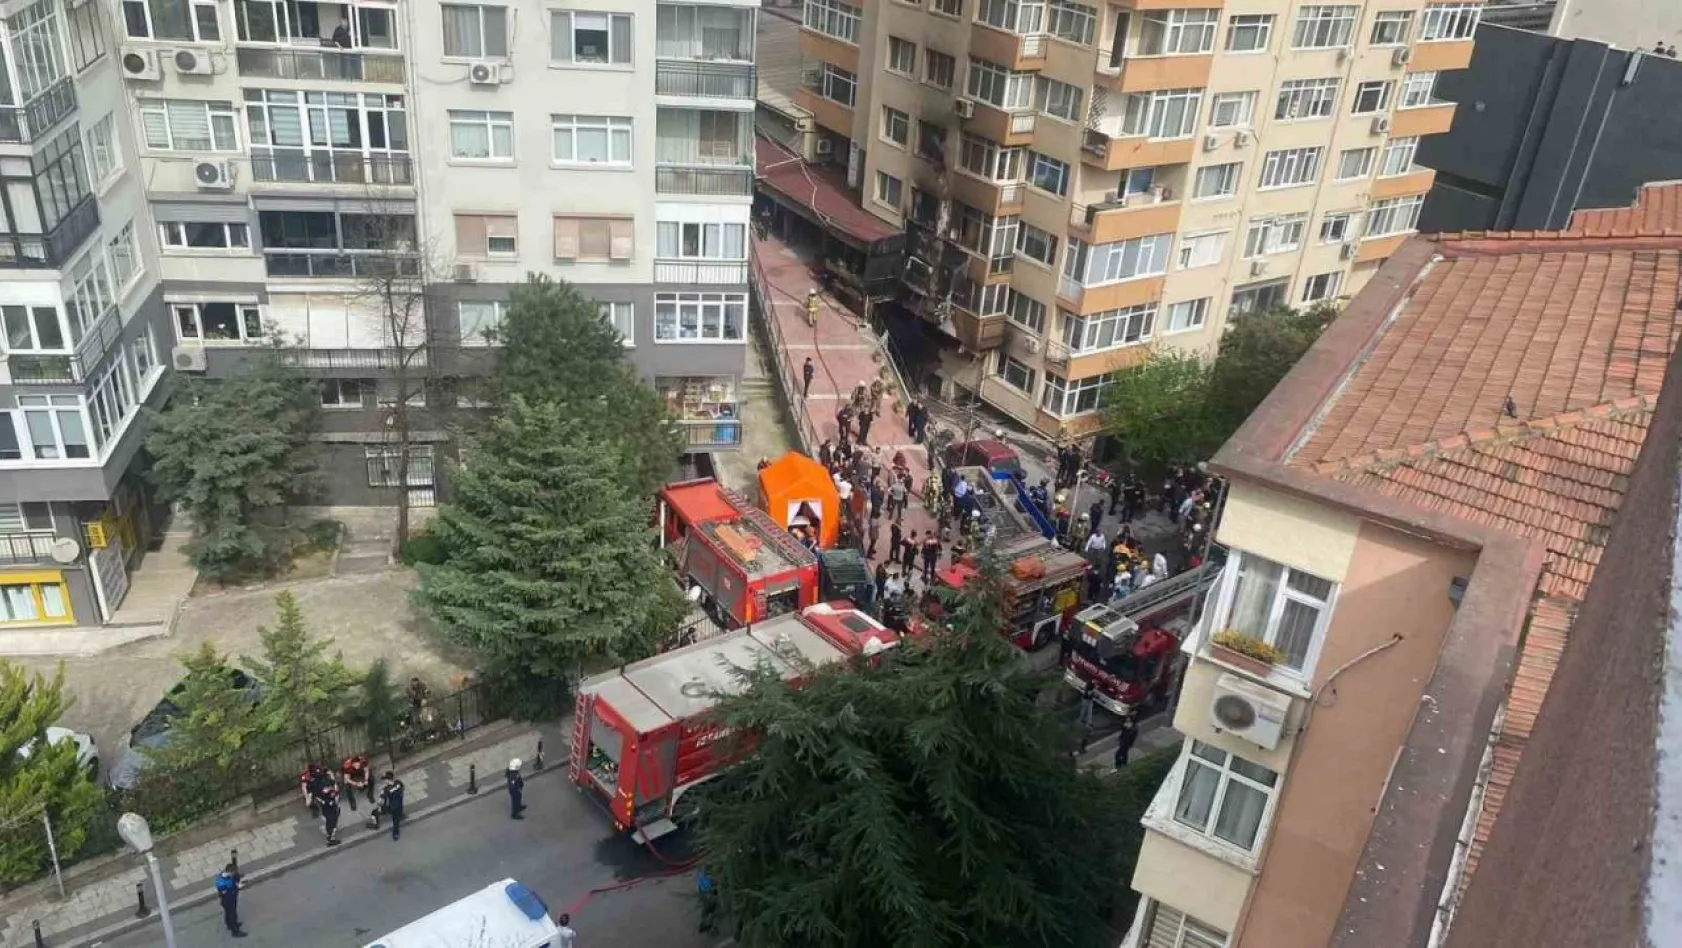 İstanbul Valiliği: '25 kişi hayatını kaybetmiş, ağır yaralı 3 kişinin tedavileri devam etmektedir'